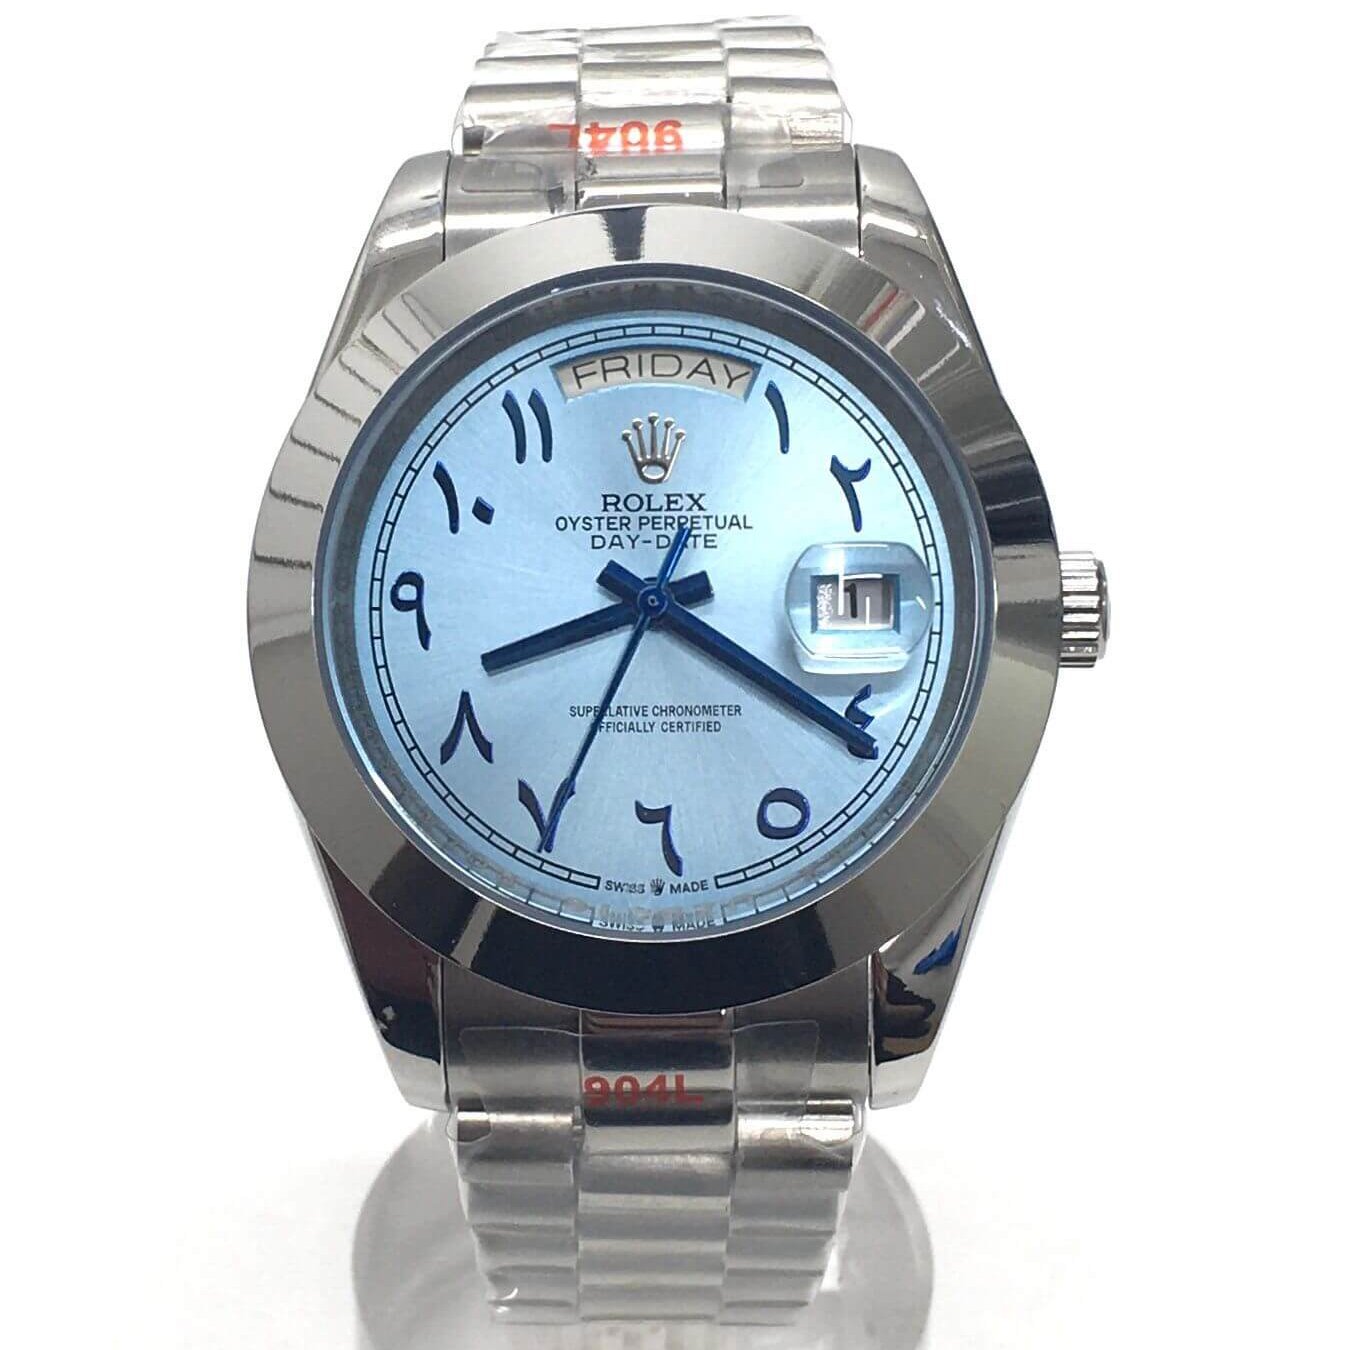 Replica Rolex Arabic Dial DayDate Watch